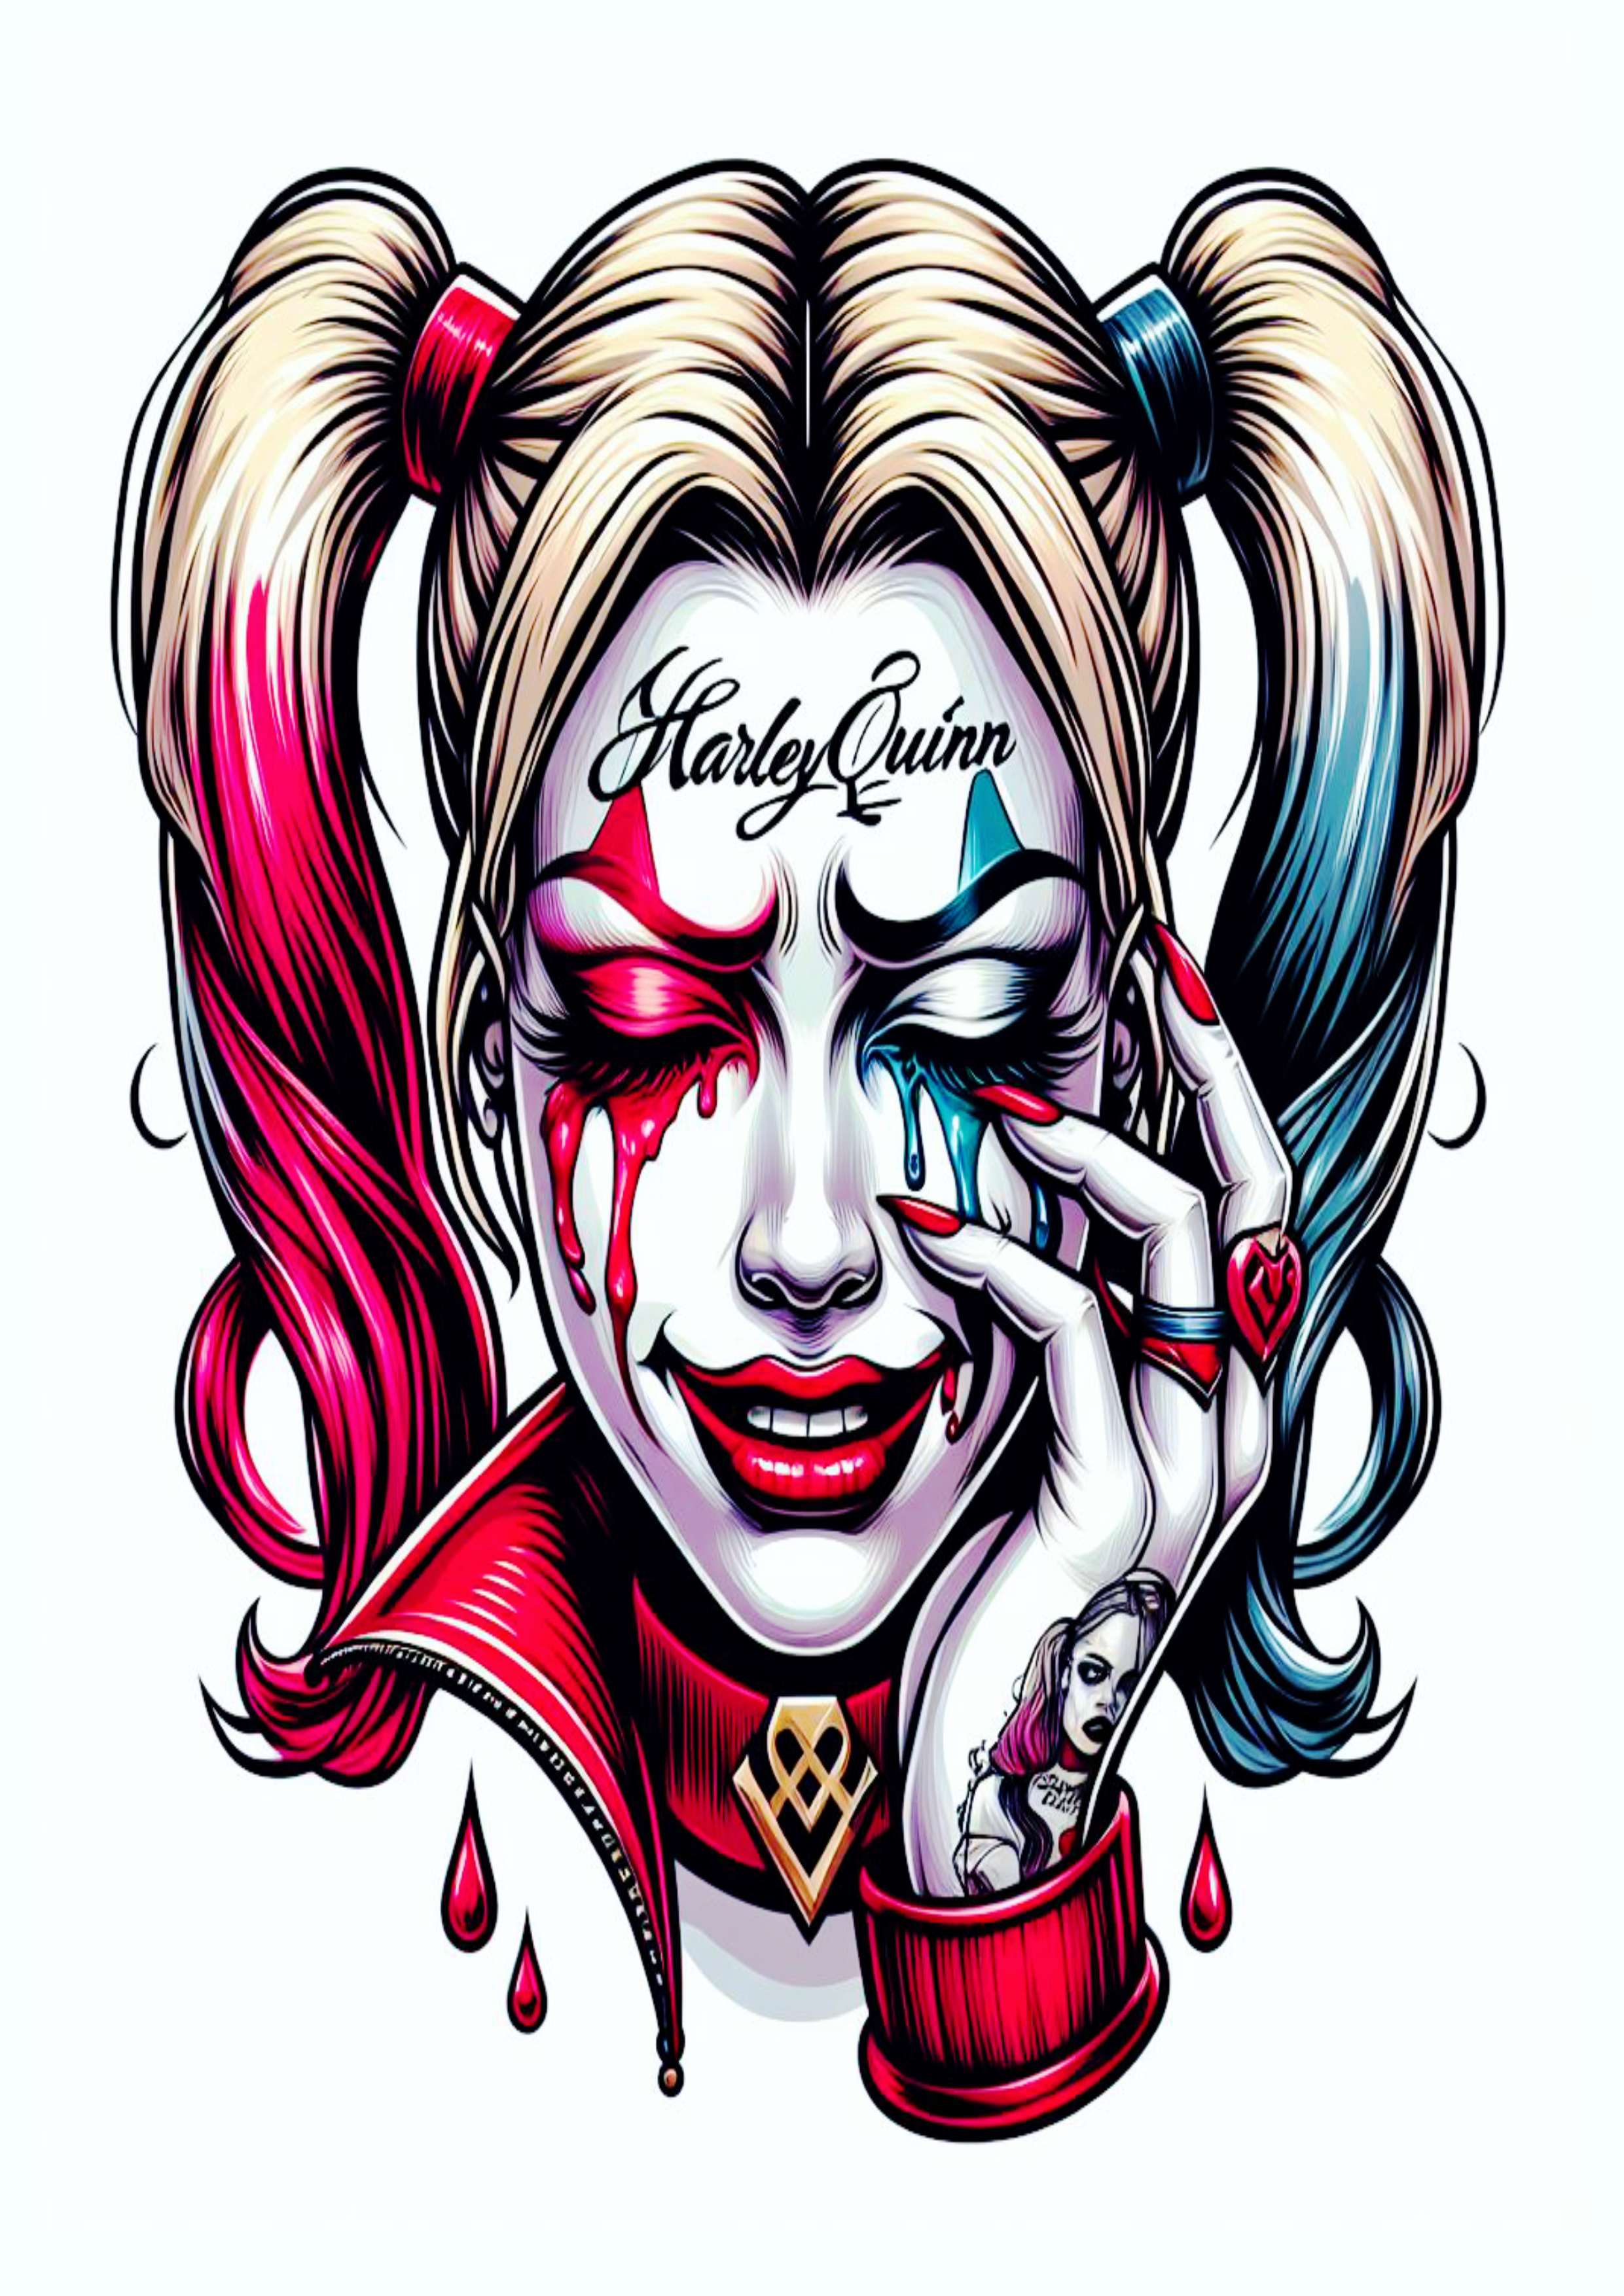 Arlequina chorando desenho colorida para tatuagem Harley Quinn desespero psicopata png